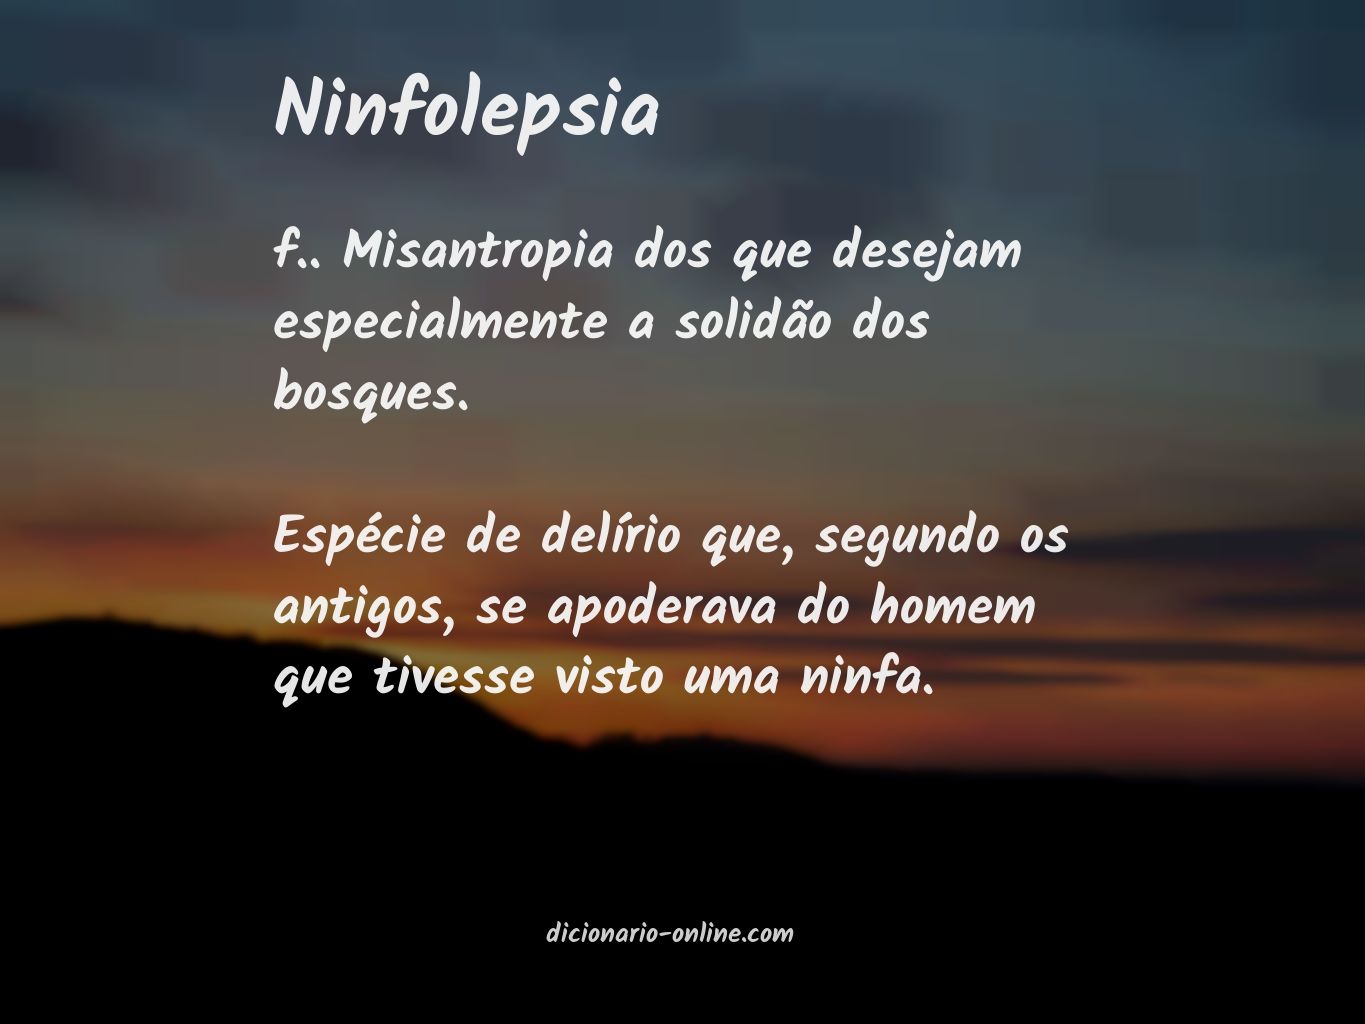 Significado de ninfolepsia